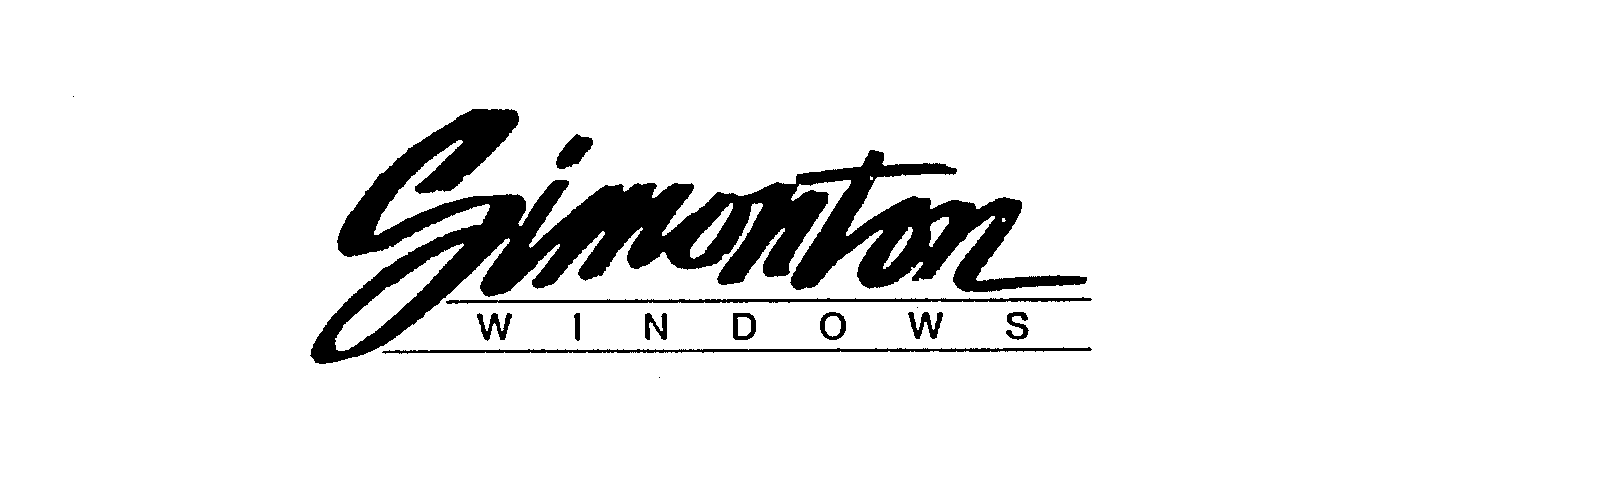  SIMONTON WINDOWS